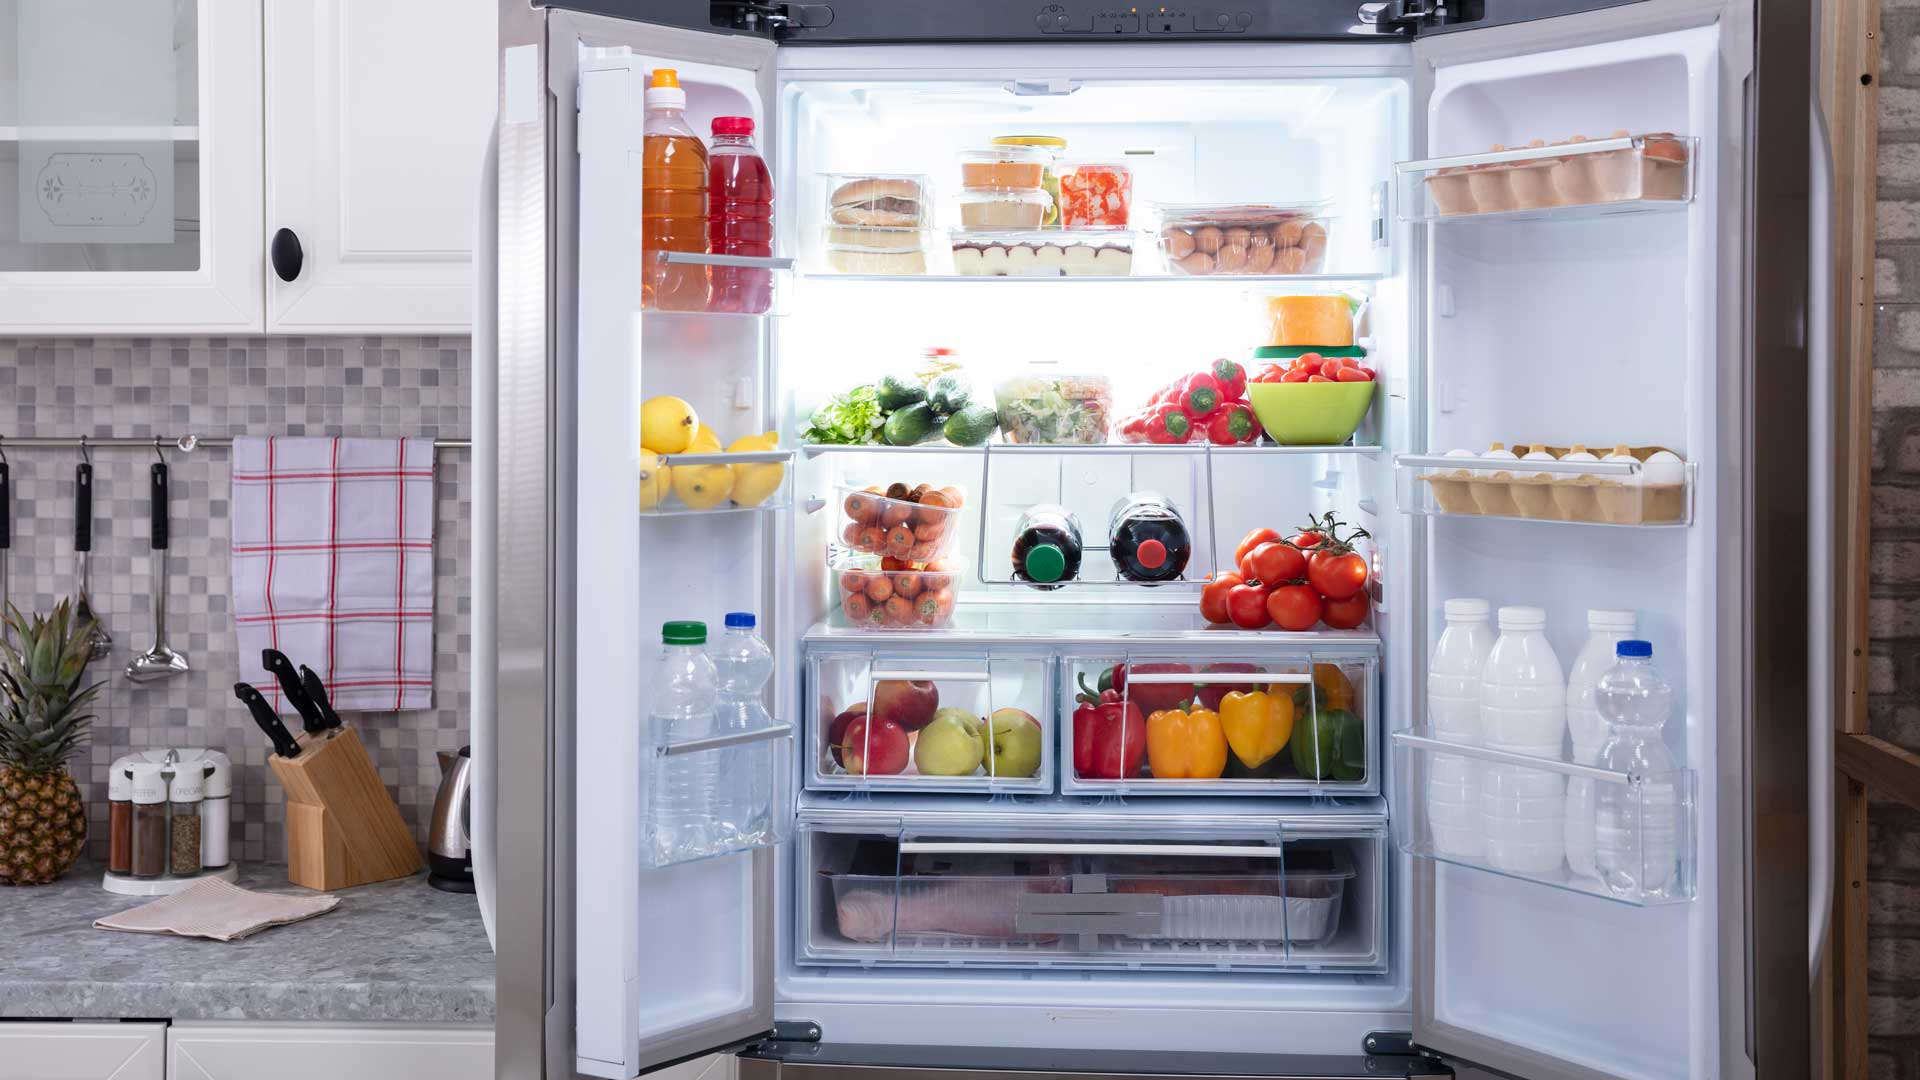 Refrigerator, doors open to show food inside